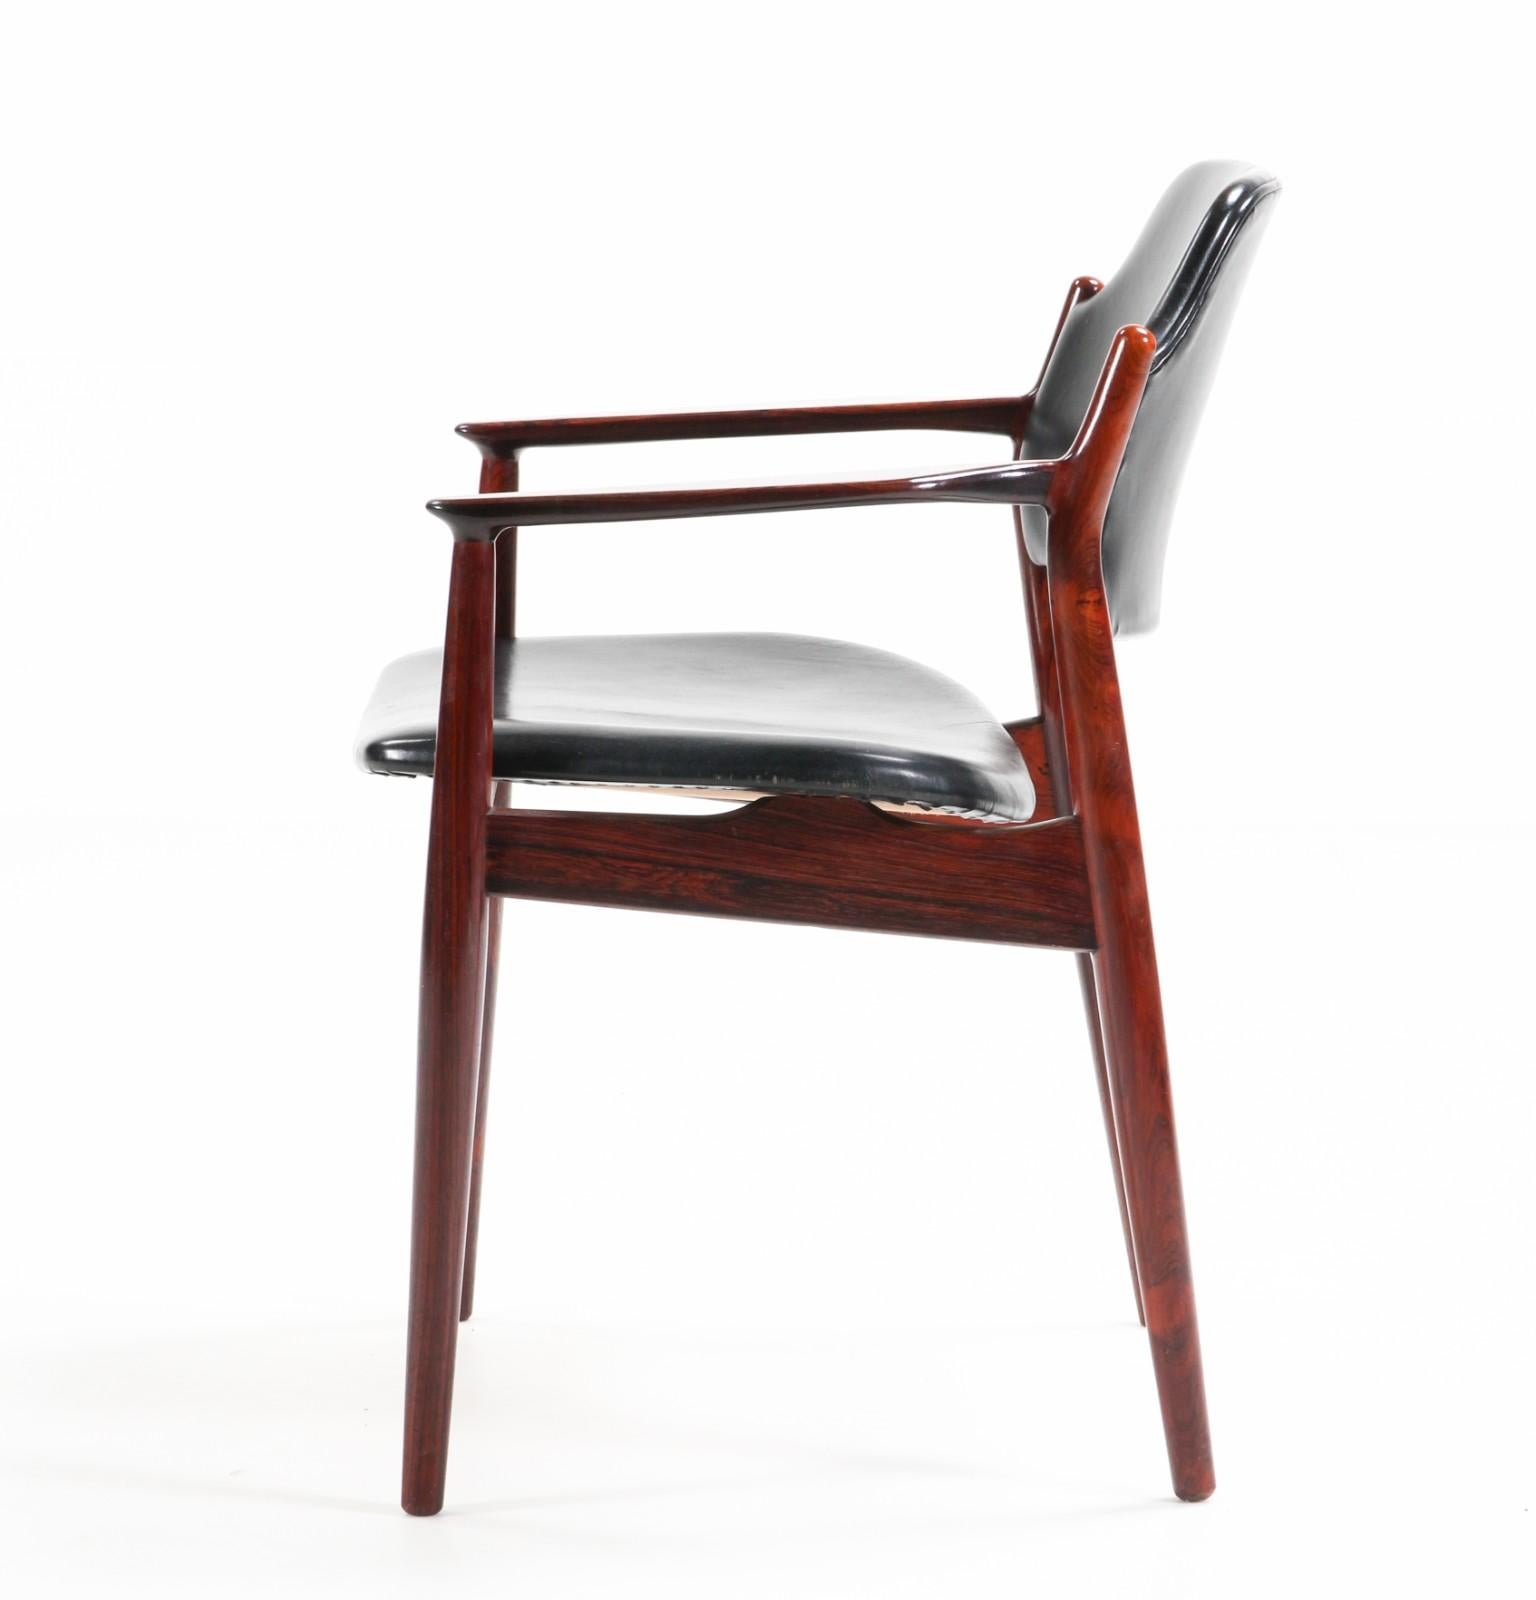 Rare paire de fauteuils de table ou de bureau modèle 62A conçus par Arne Vodder. Les lignes et les finitions sont raffinées. Les détails sculpturaux du dossier avec ses belles articulations créent une grande combinaison de confort et de simplicité,